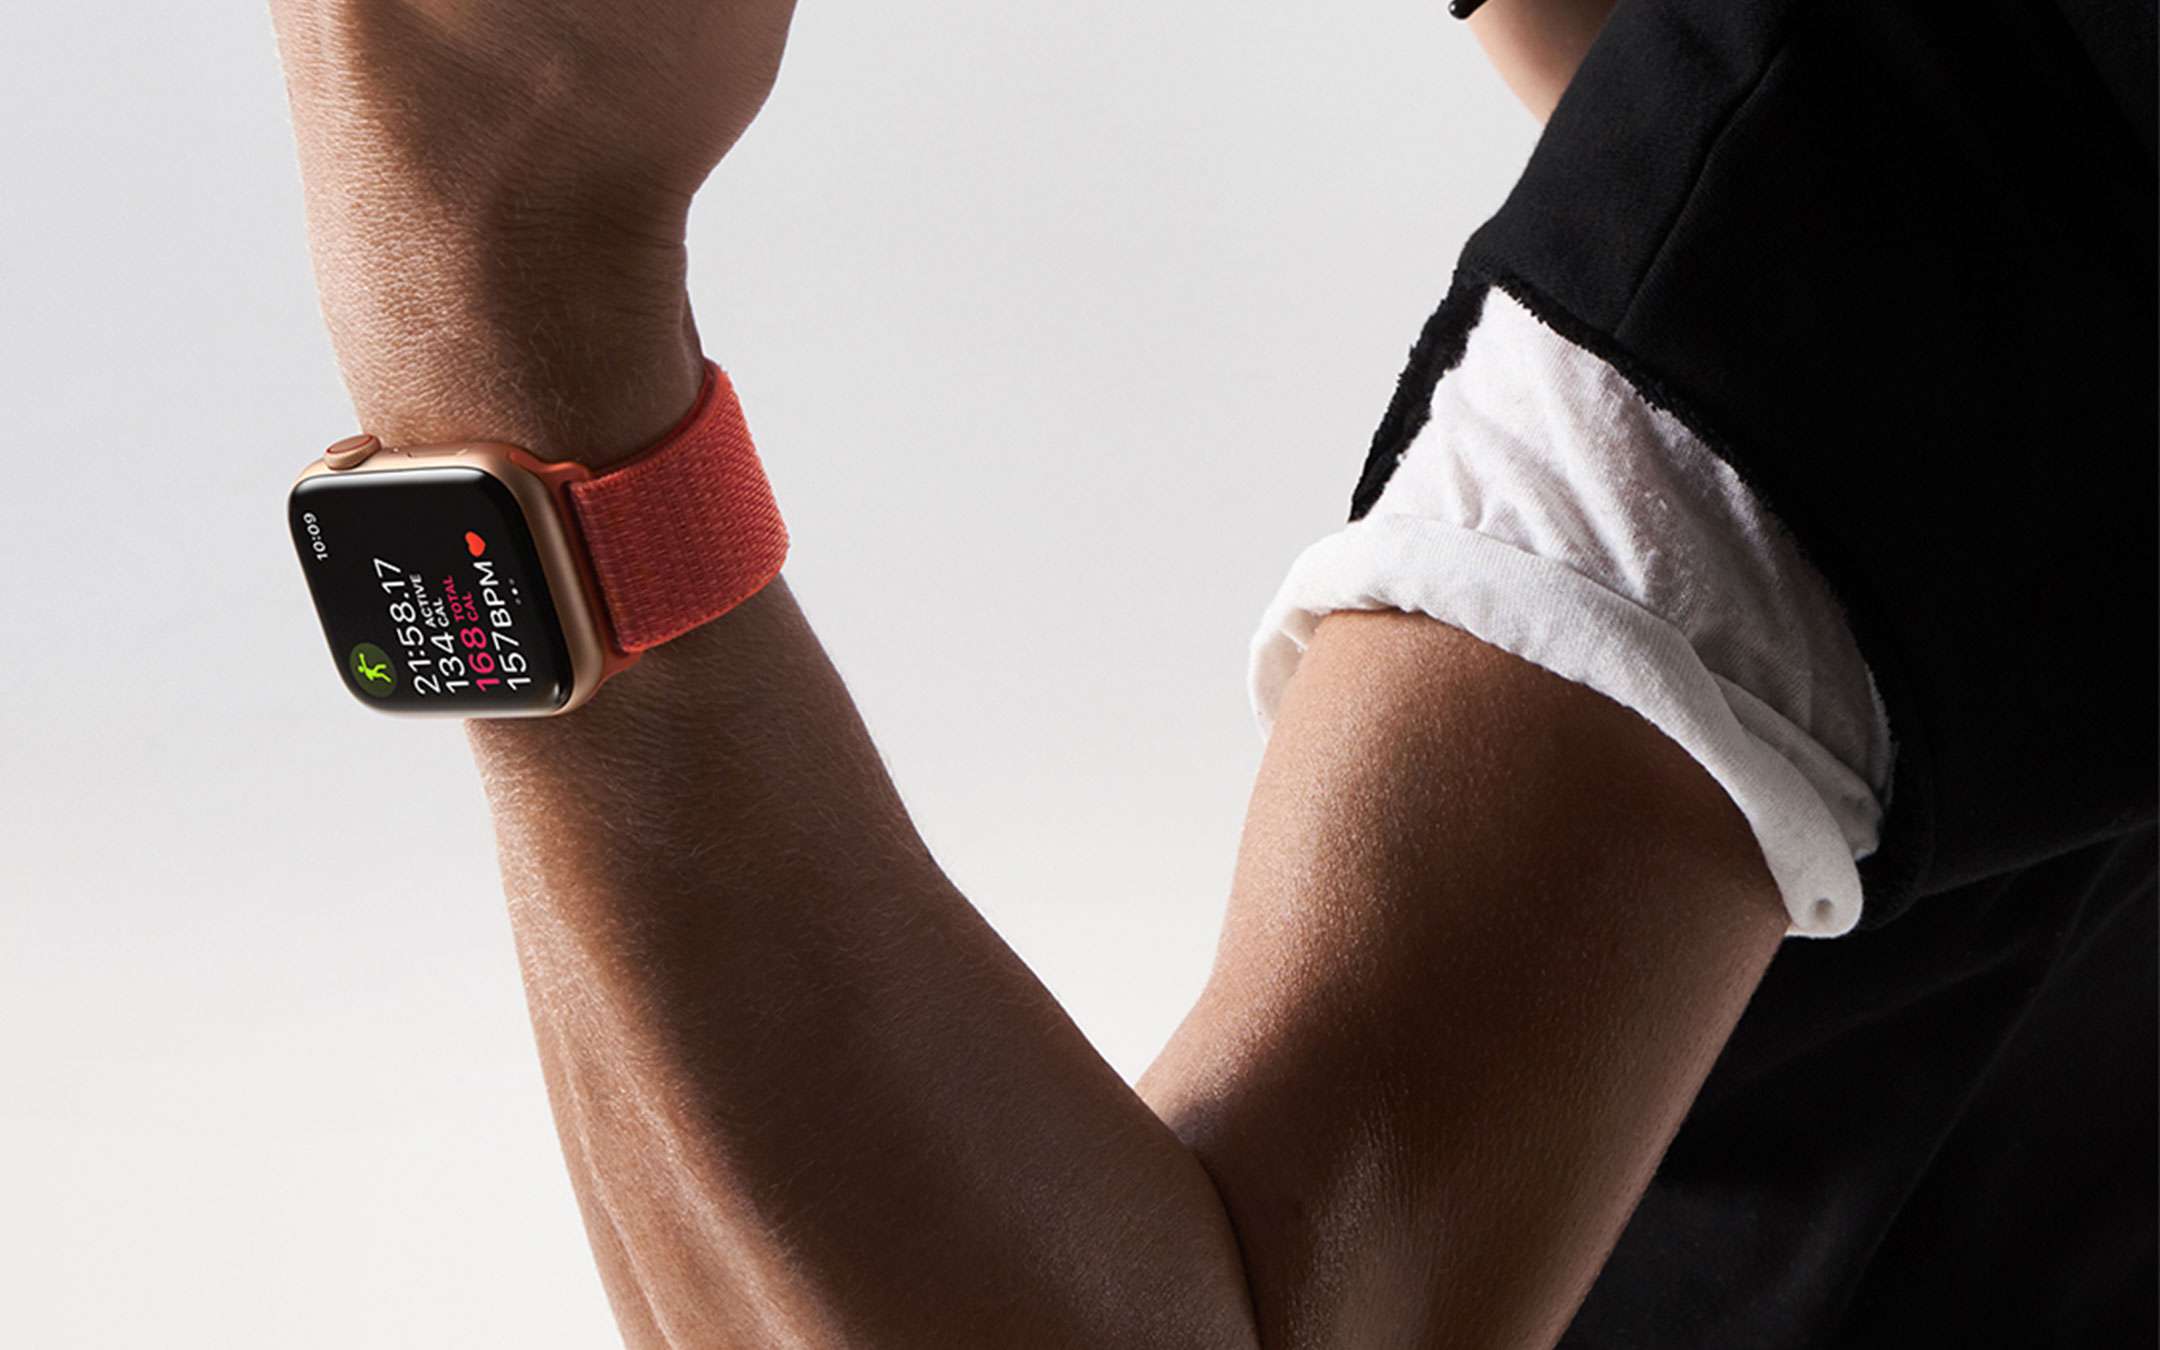 Apple Watch controllerà ossigeno nel sangue, pare